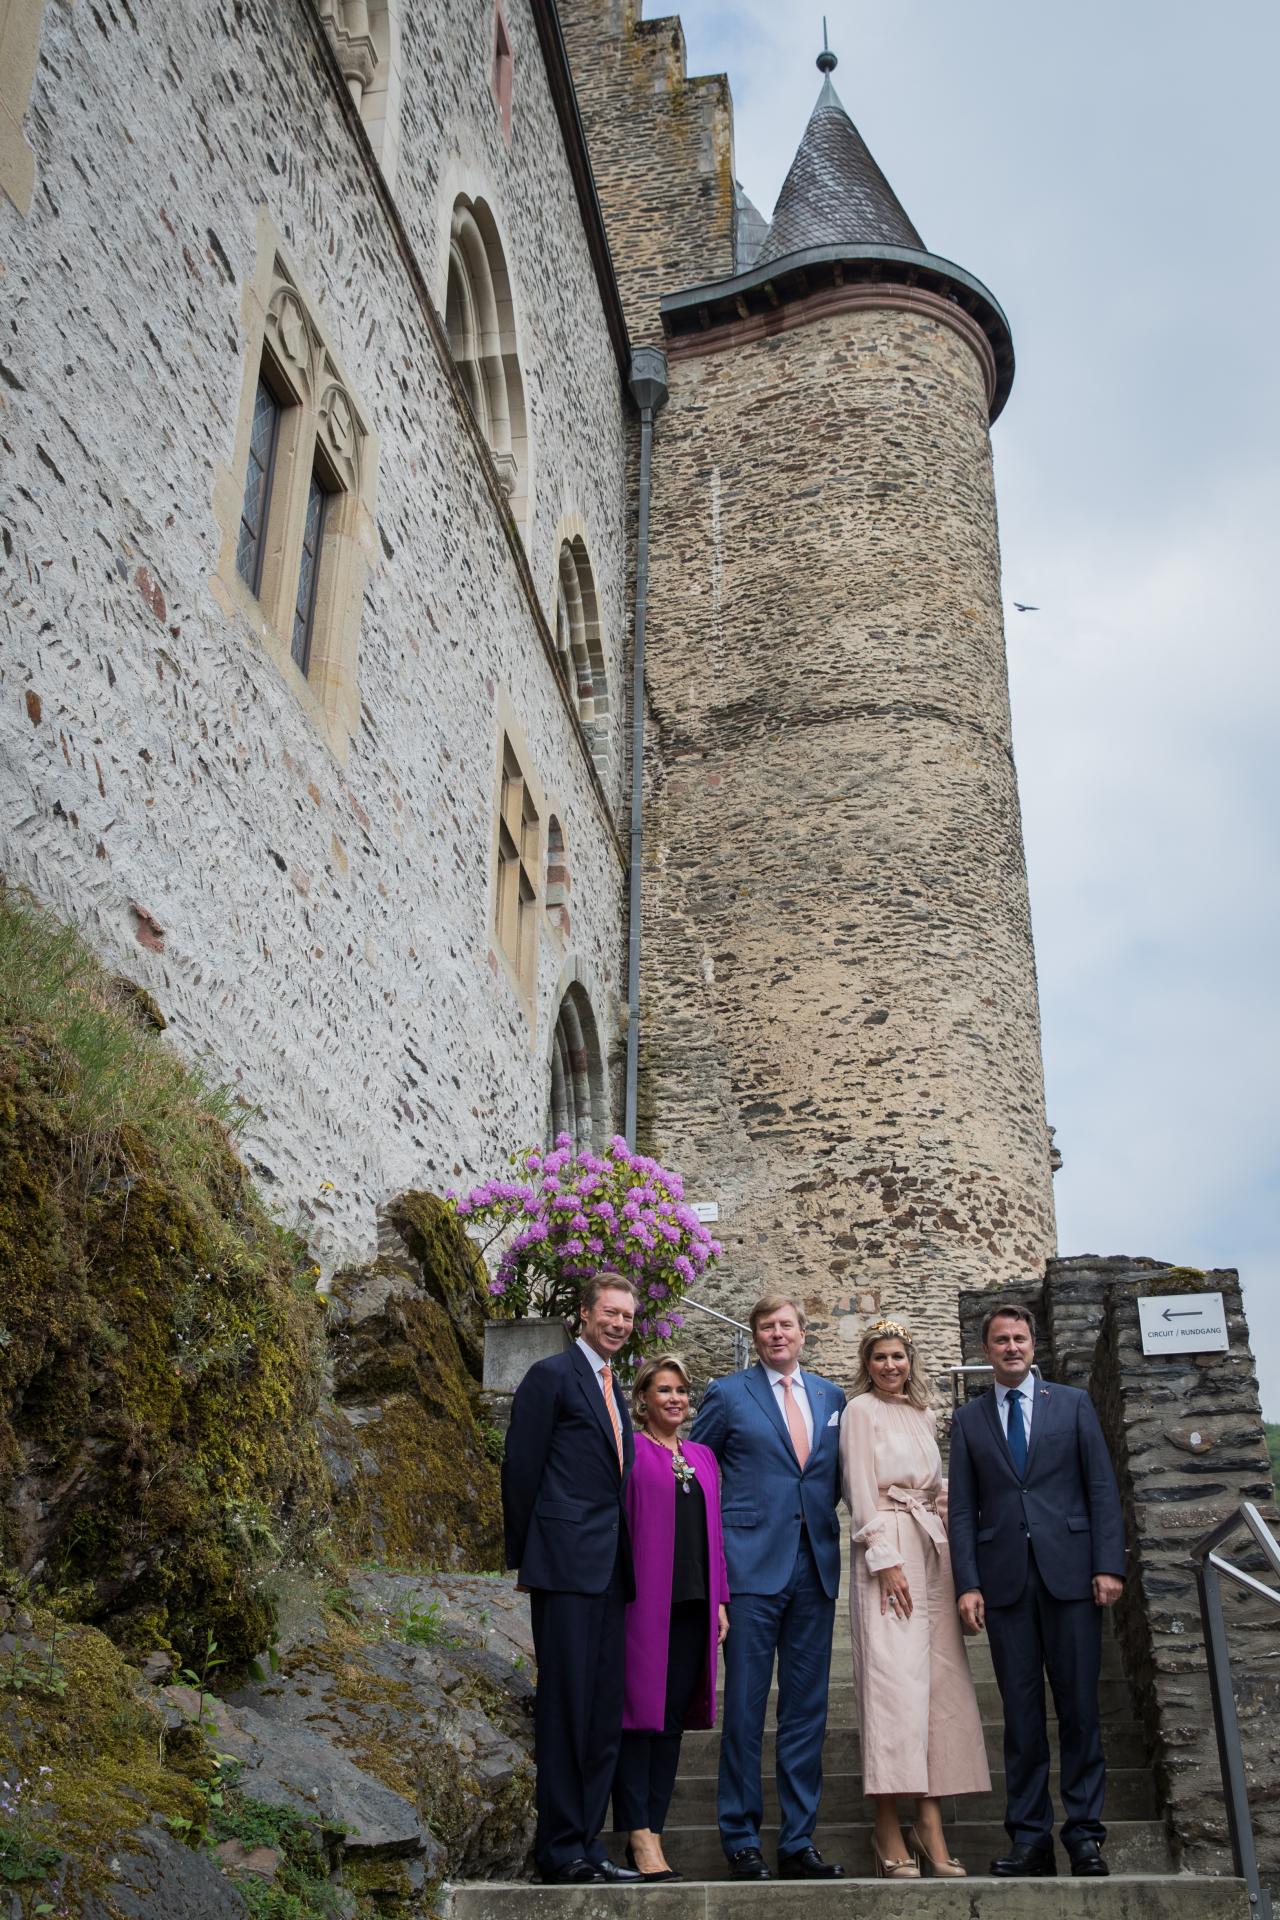 Besuch des Schlosses von Vianden